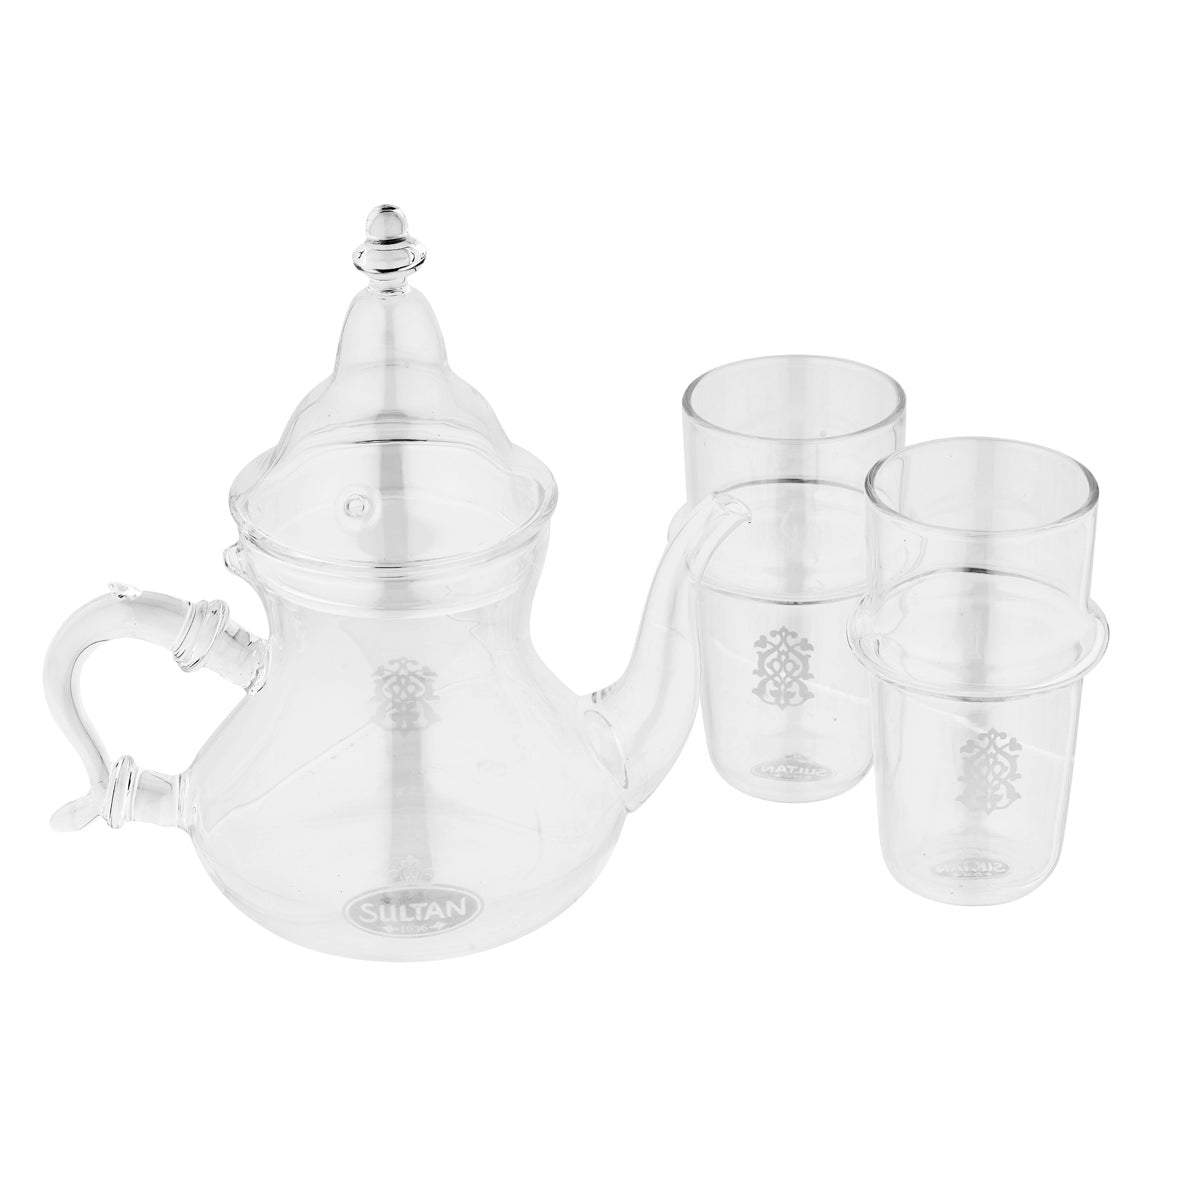 Service de théière en verre marocain avec 2 tasses en verre